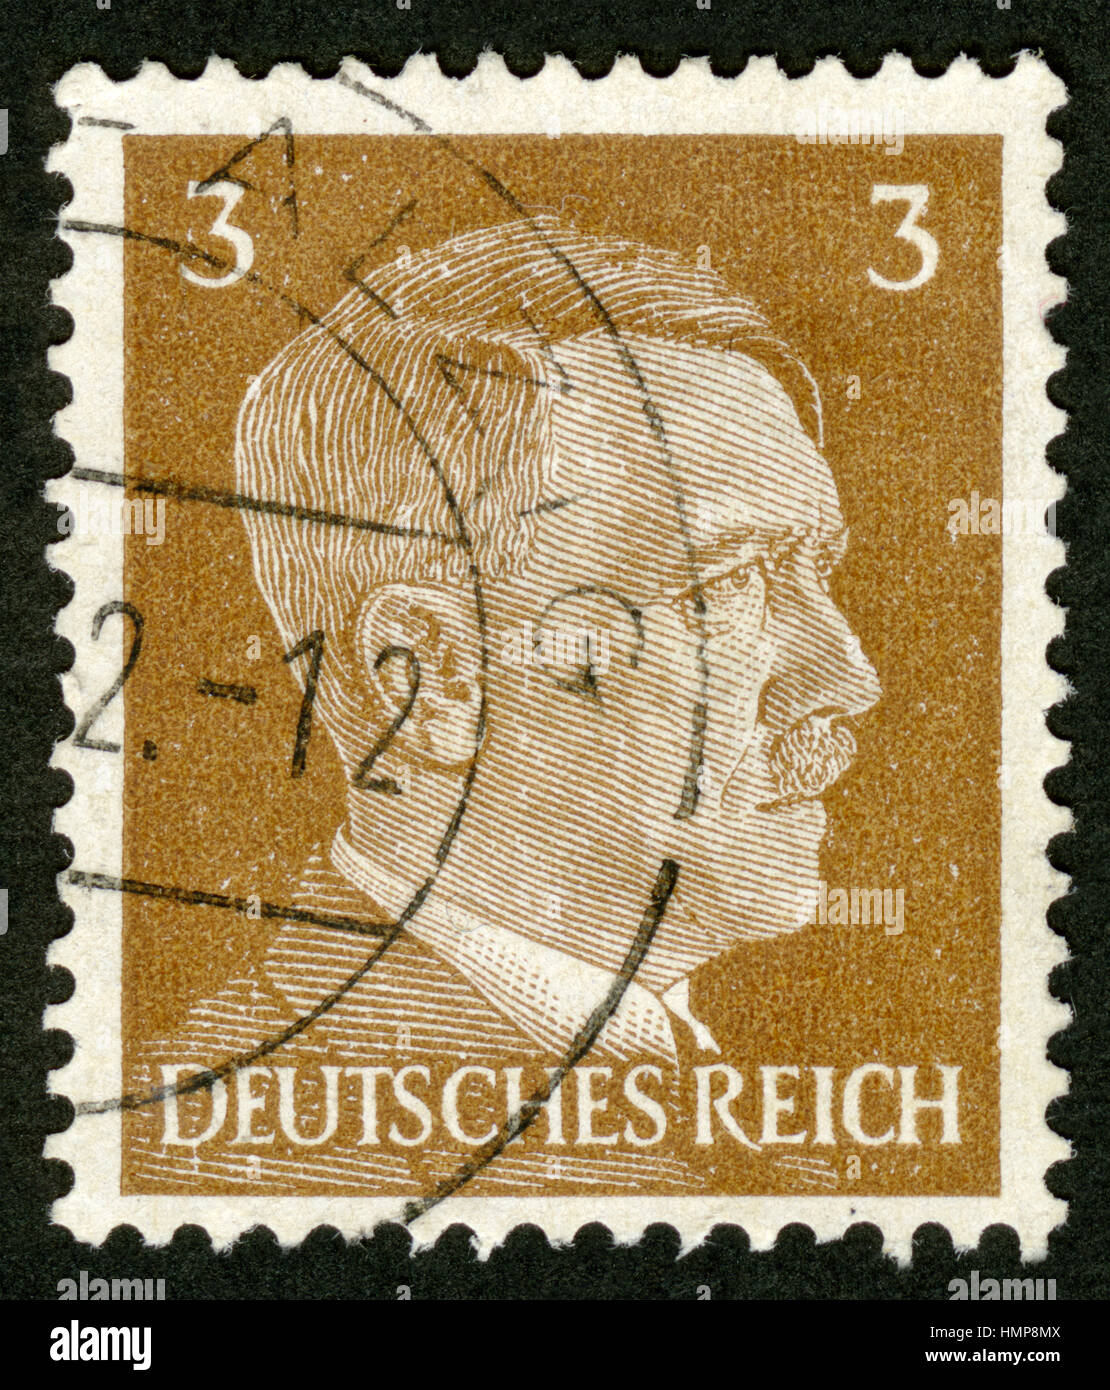 German Reich postage stamp, portrait Adolf Hitler, Year 1941 Stock Photo